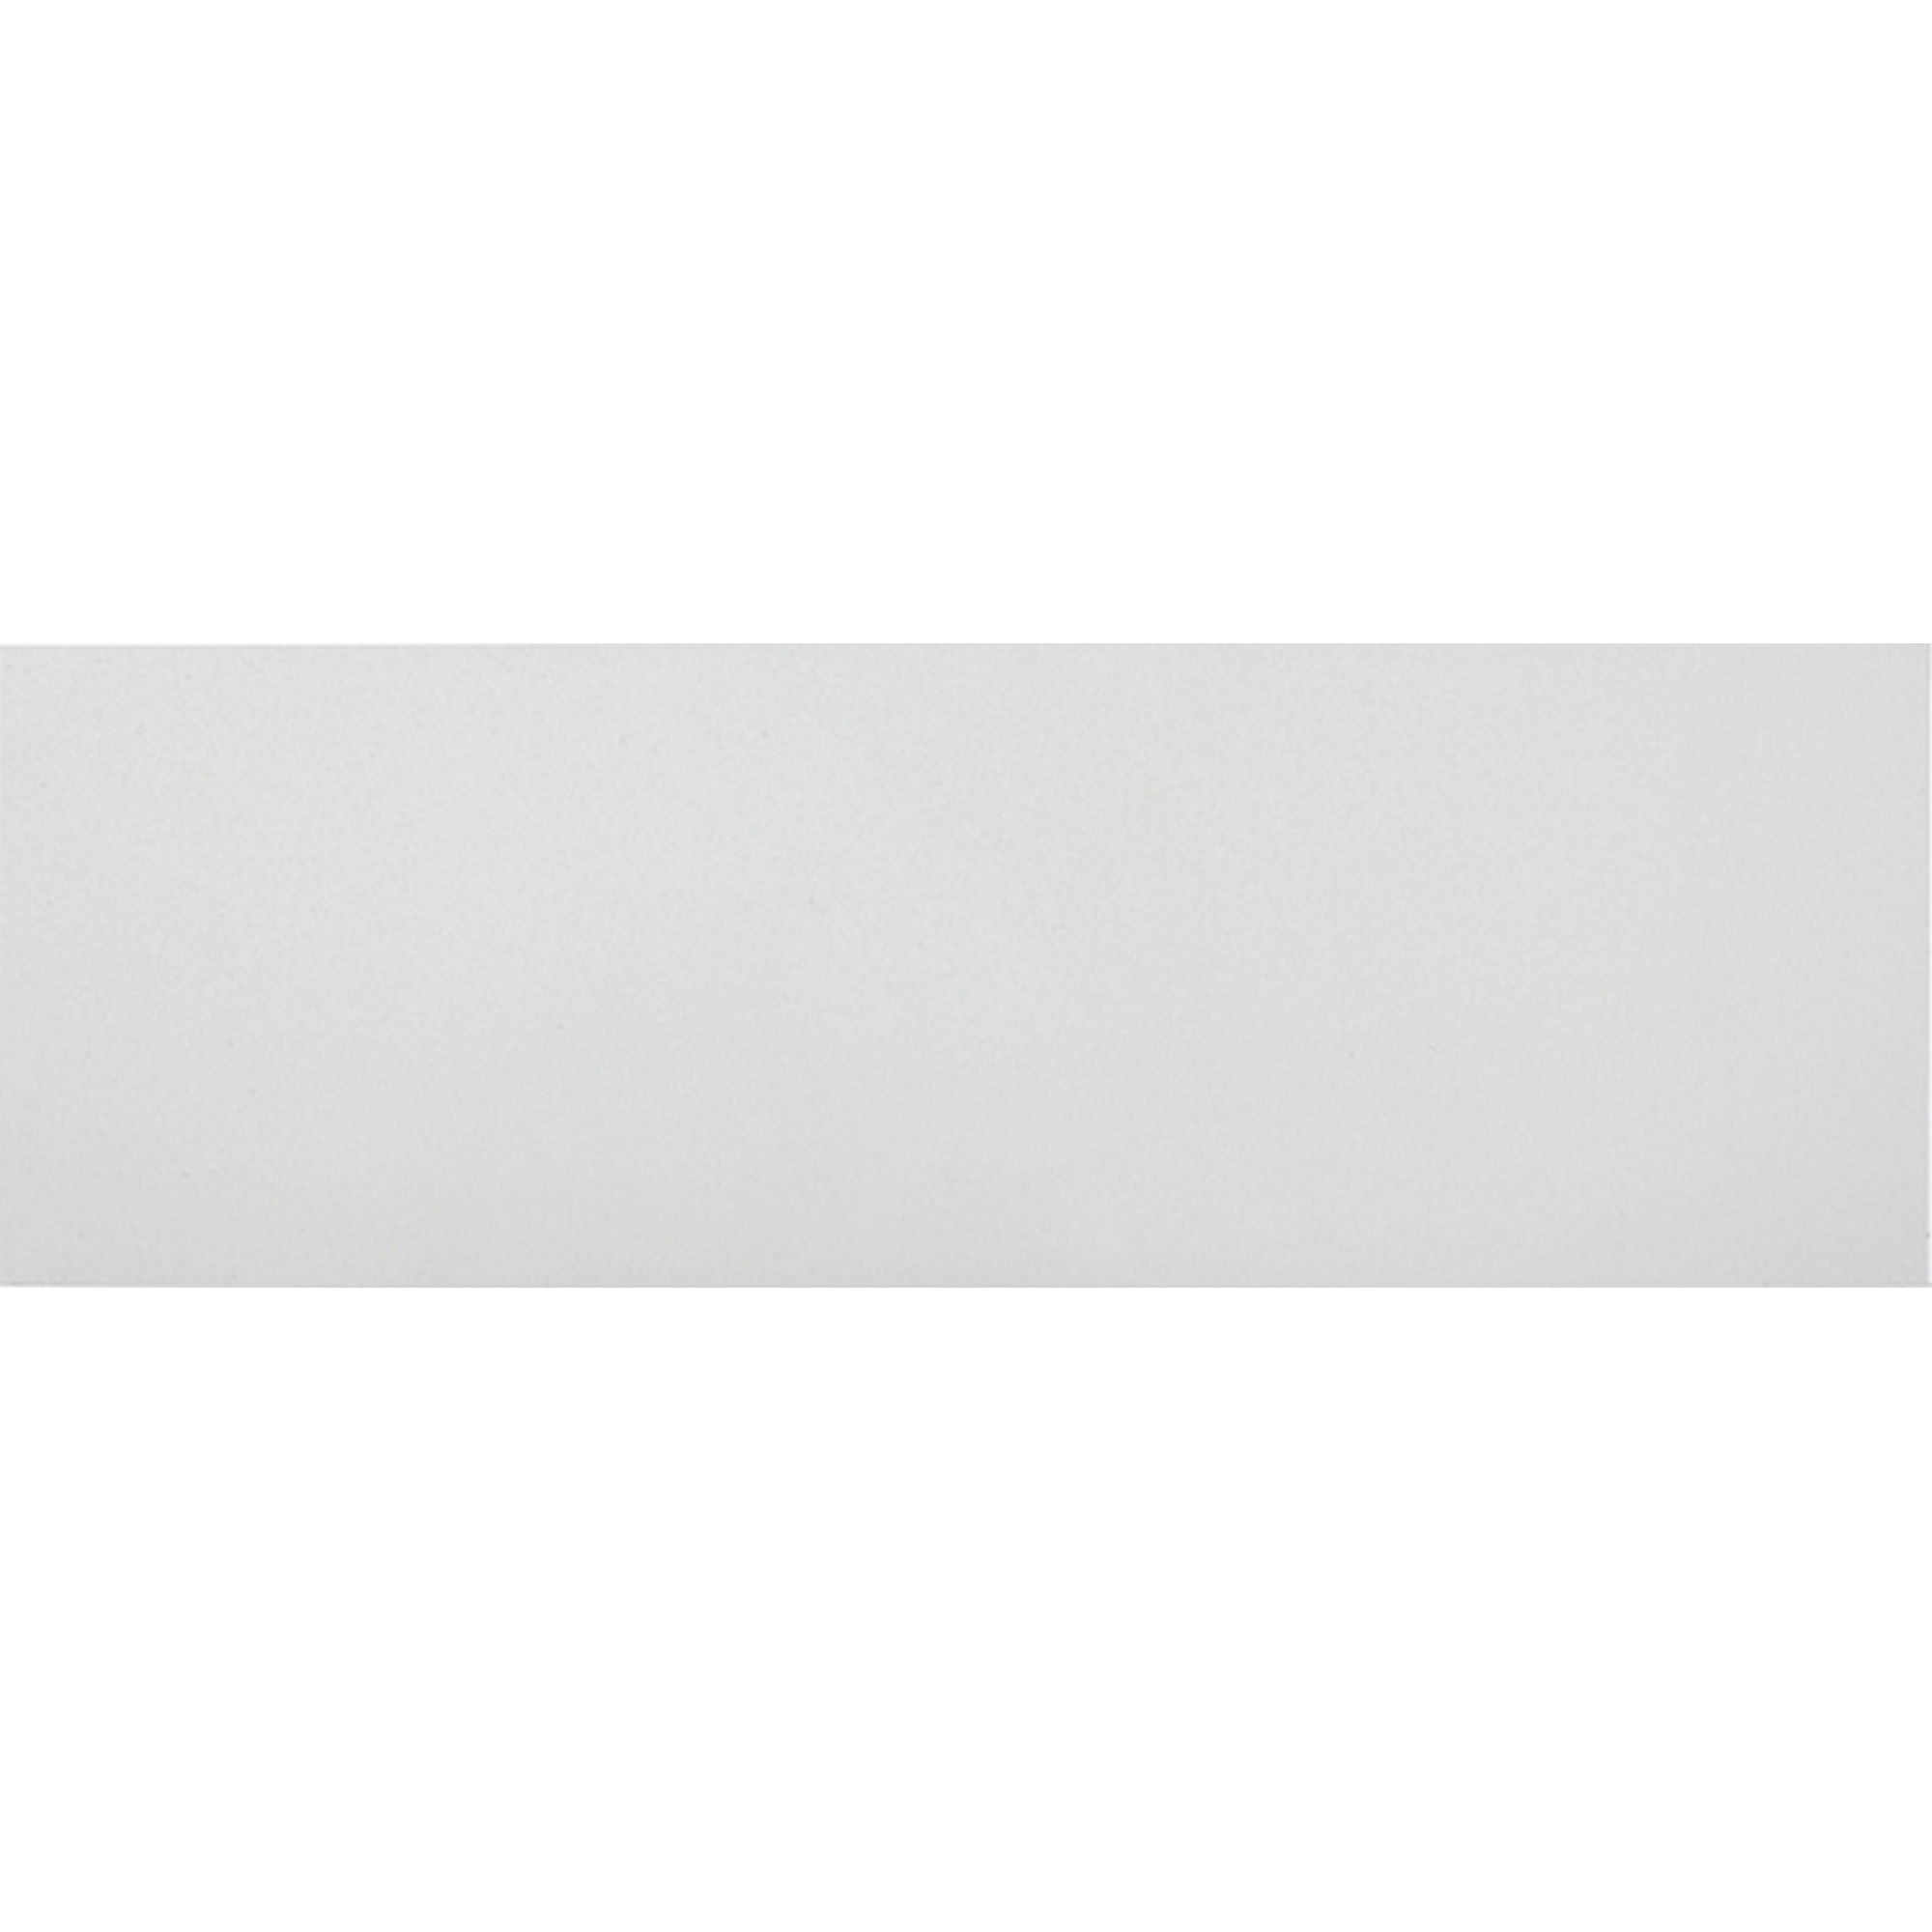 Wandfliese 'weiß glossy' Steingut weiß glänzend 30 x 90 cm + product picture